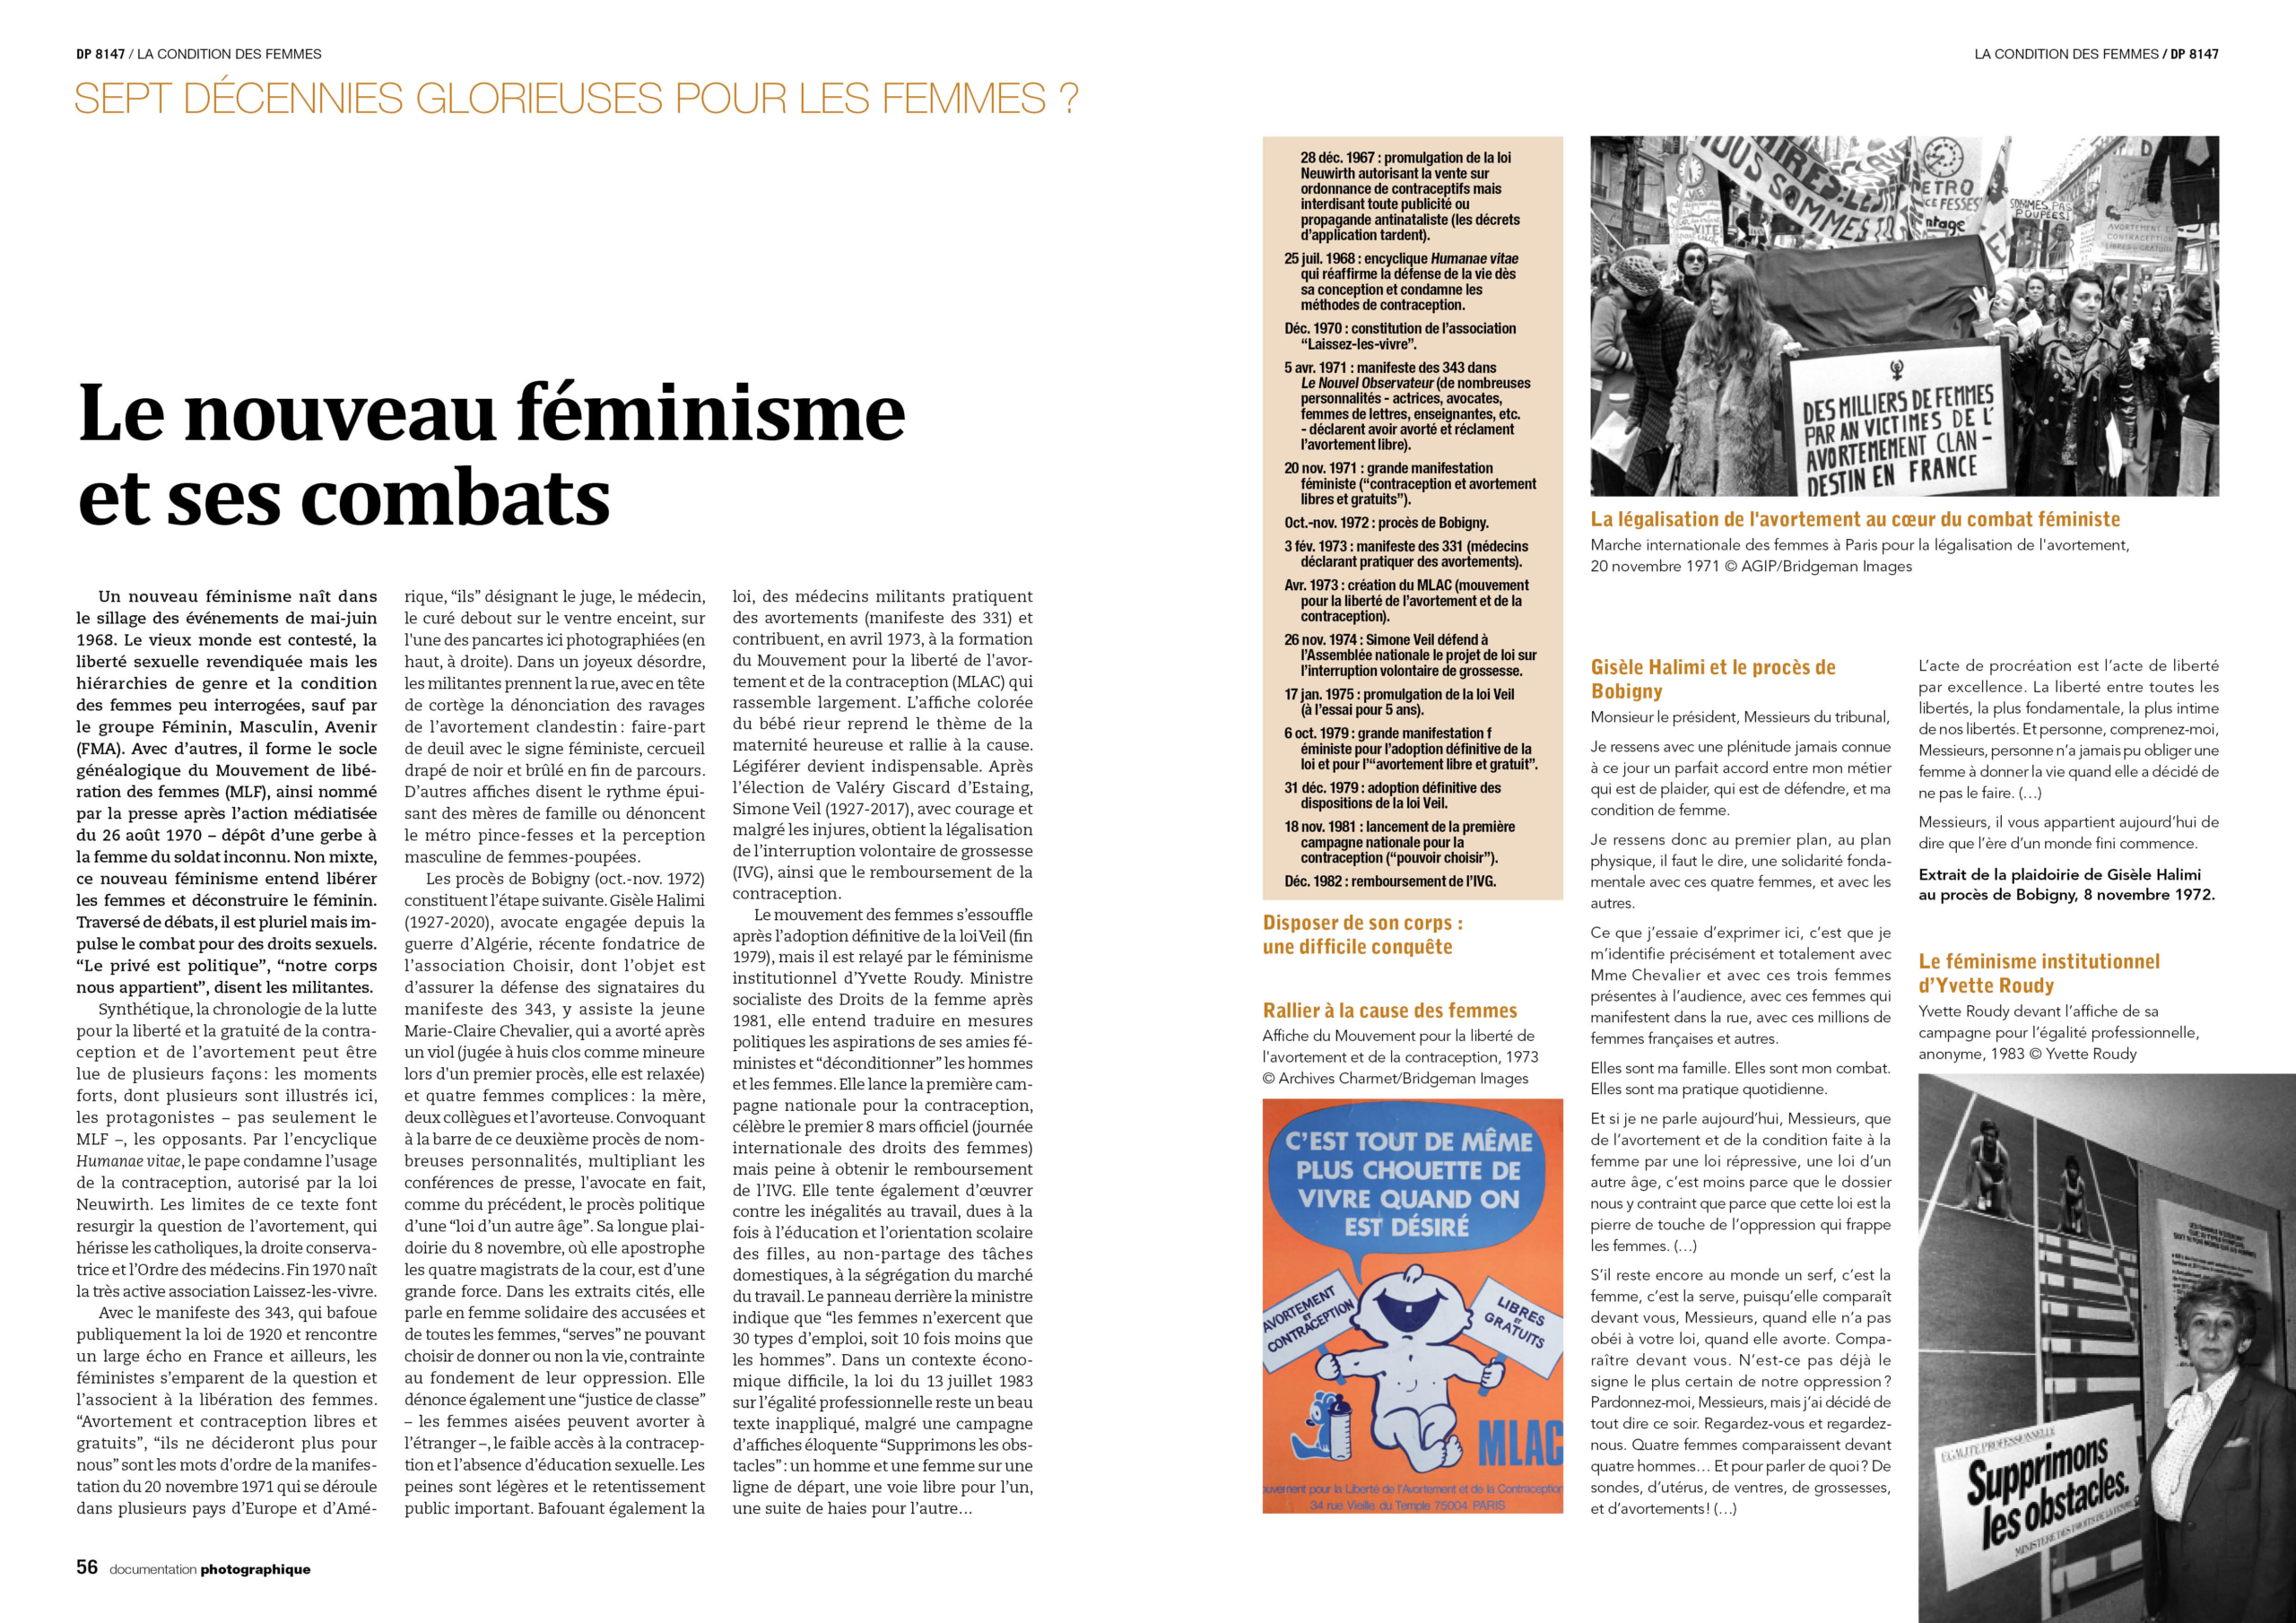 "Le nouveau féminisme et ses combats" pp. 56-57